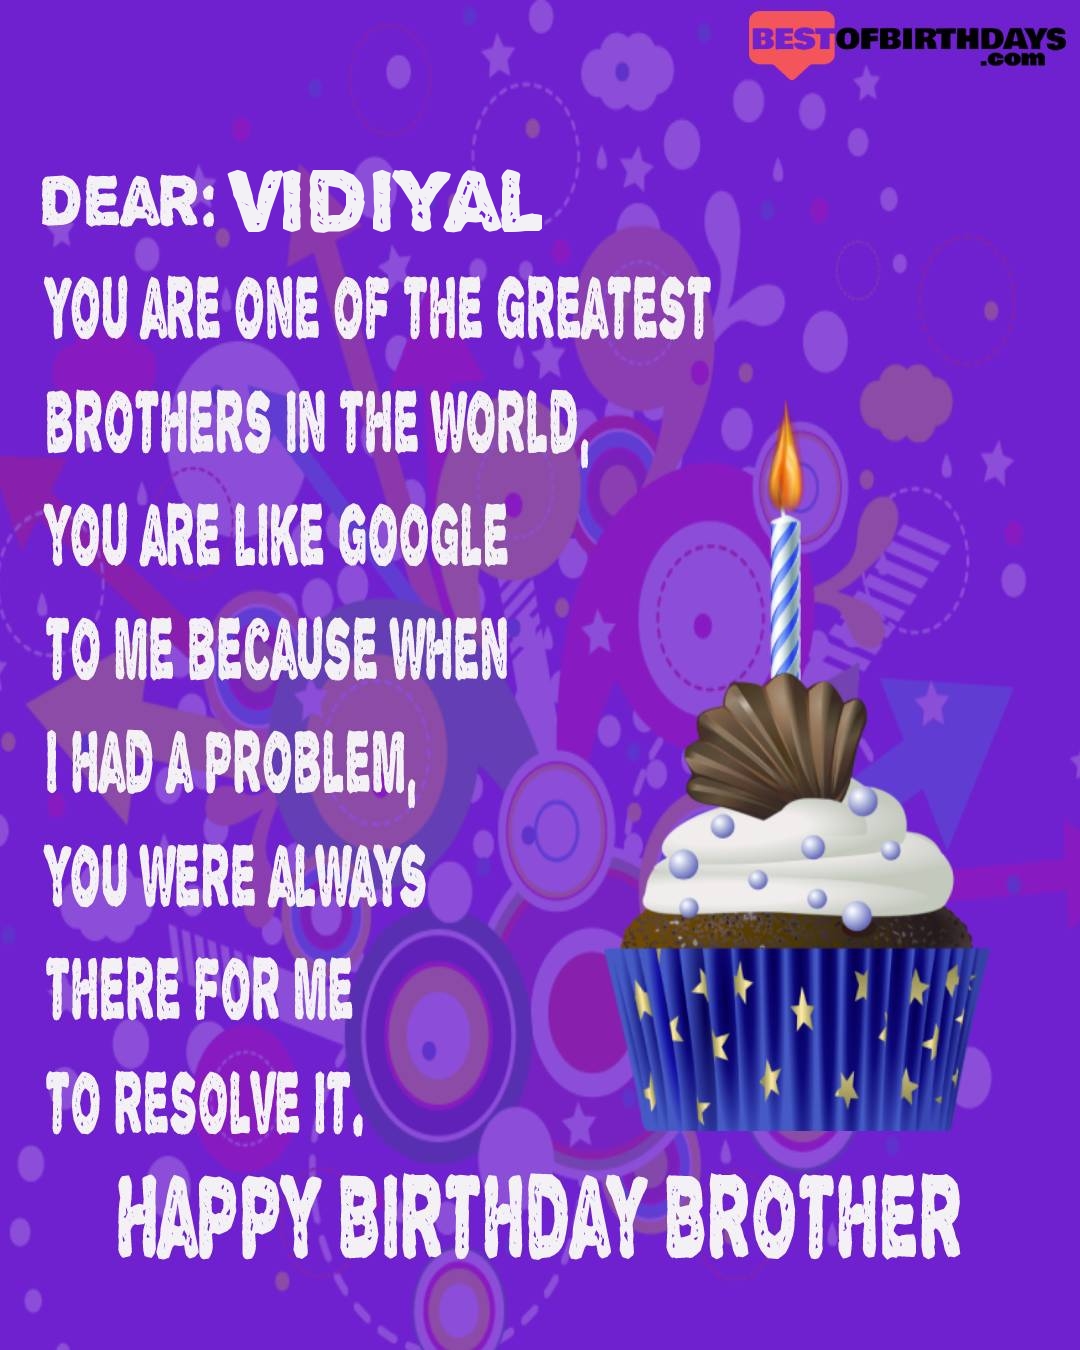 Happy birthday vidiyal bhai brother bro